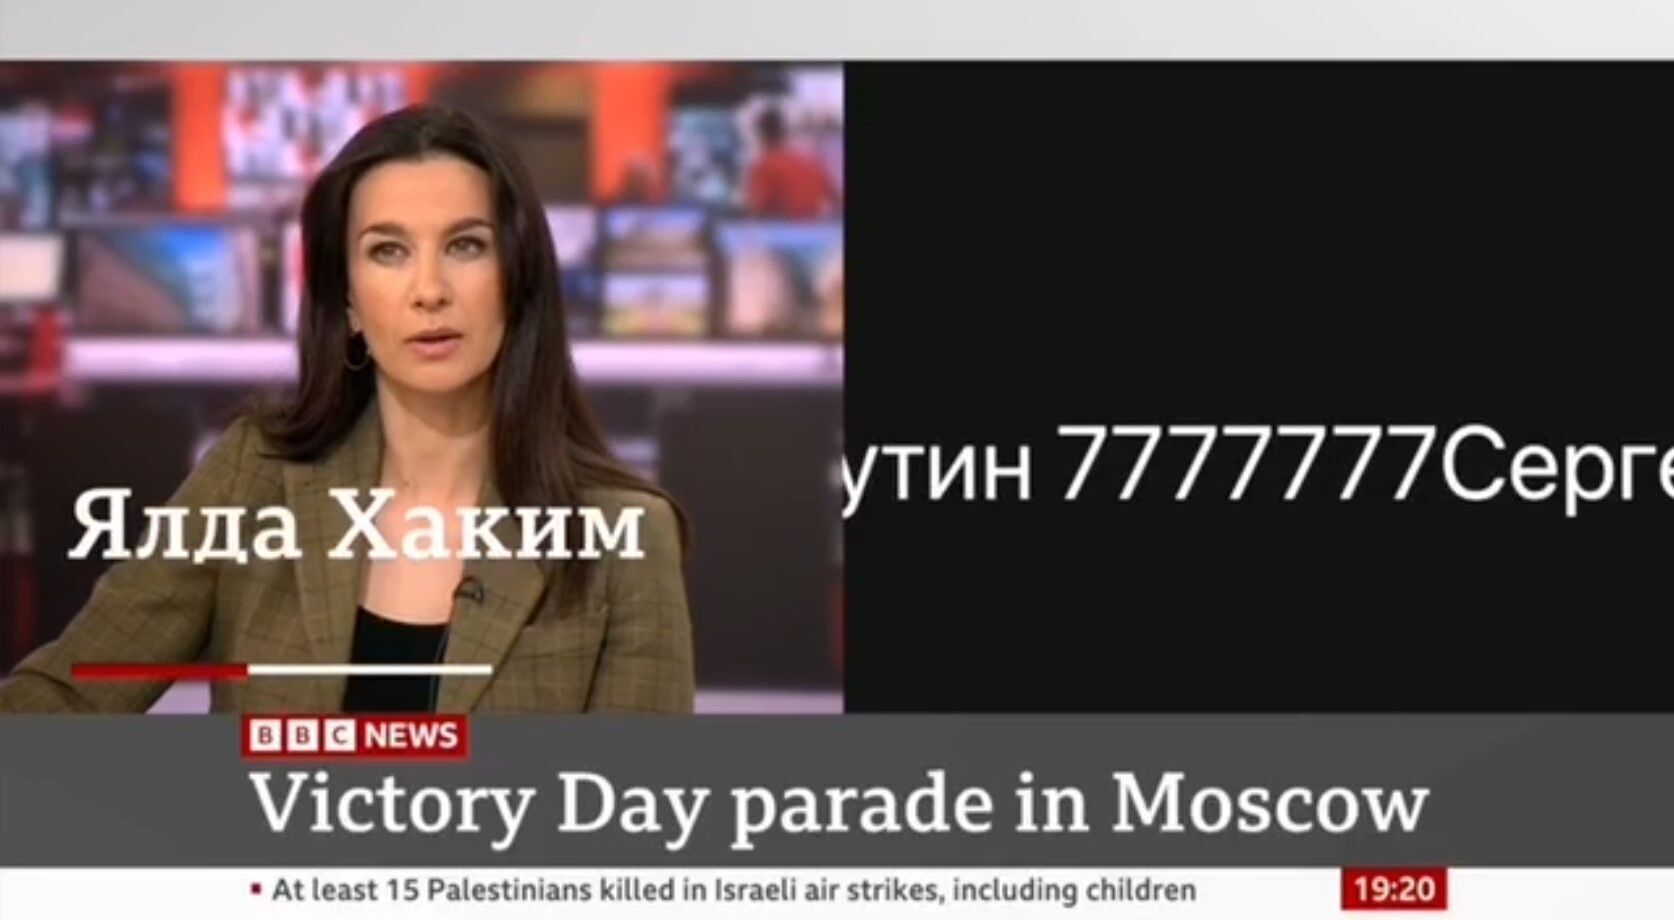 Российского пропагандиста Маркова "накрыло" в эфире британского ТВ после слов ведущей об Украине. Видео